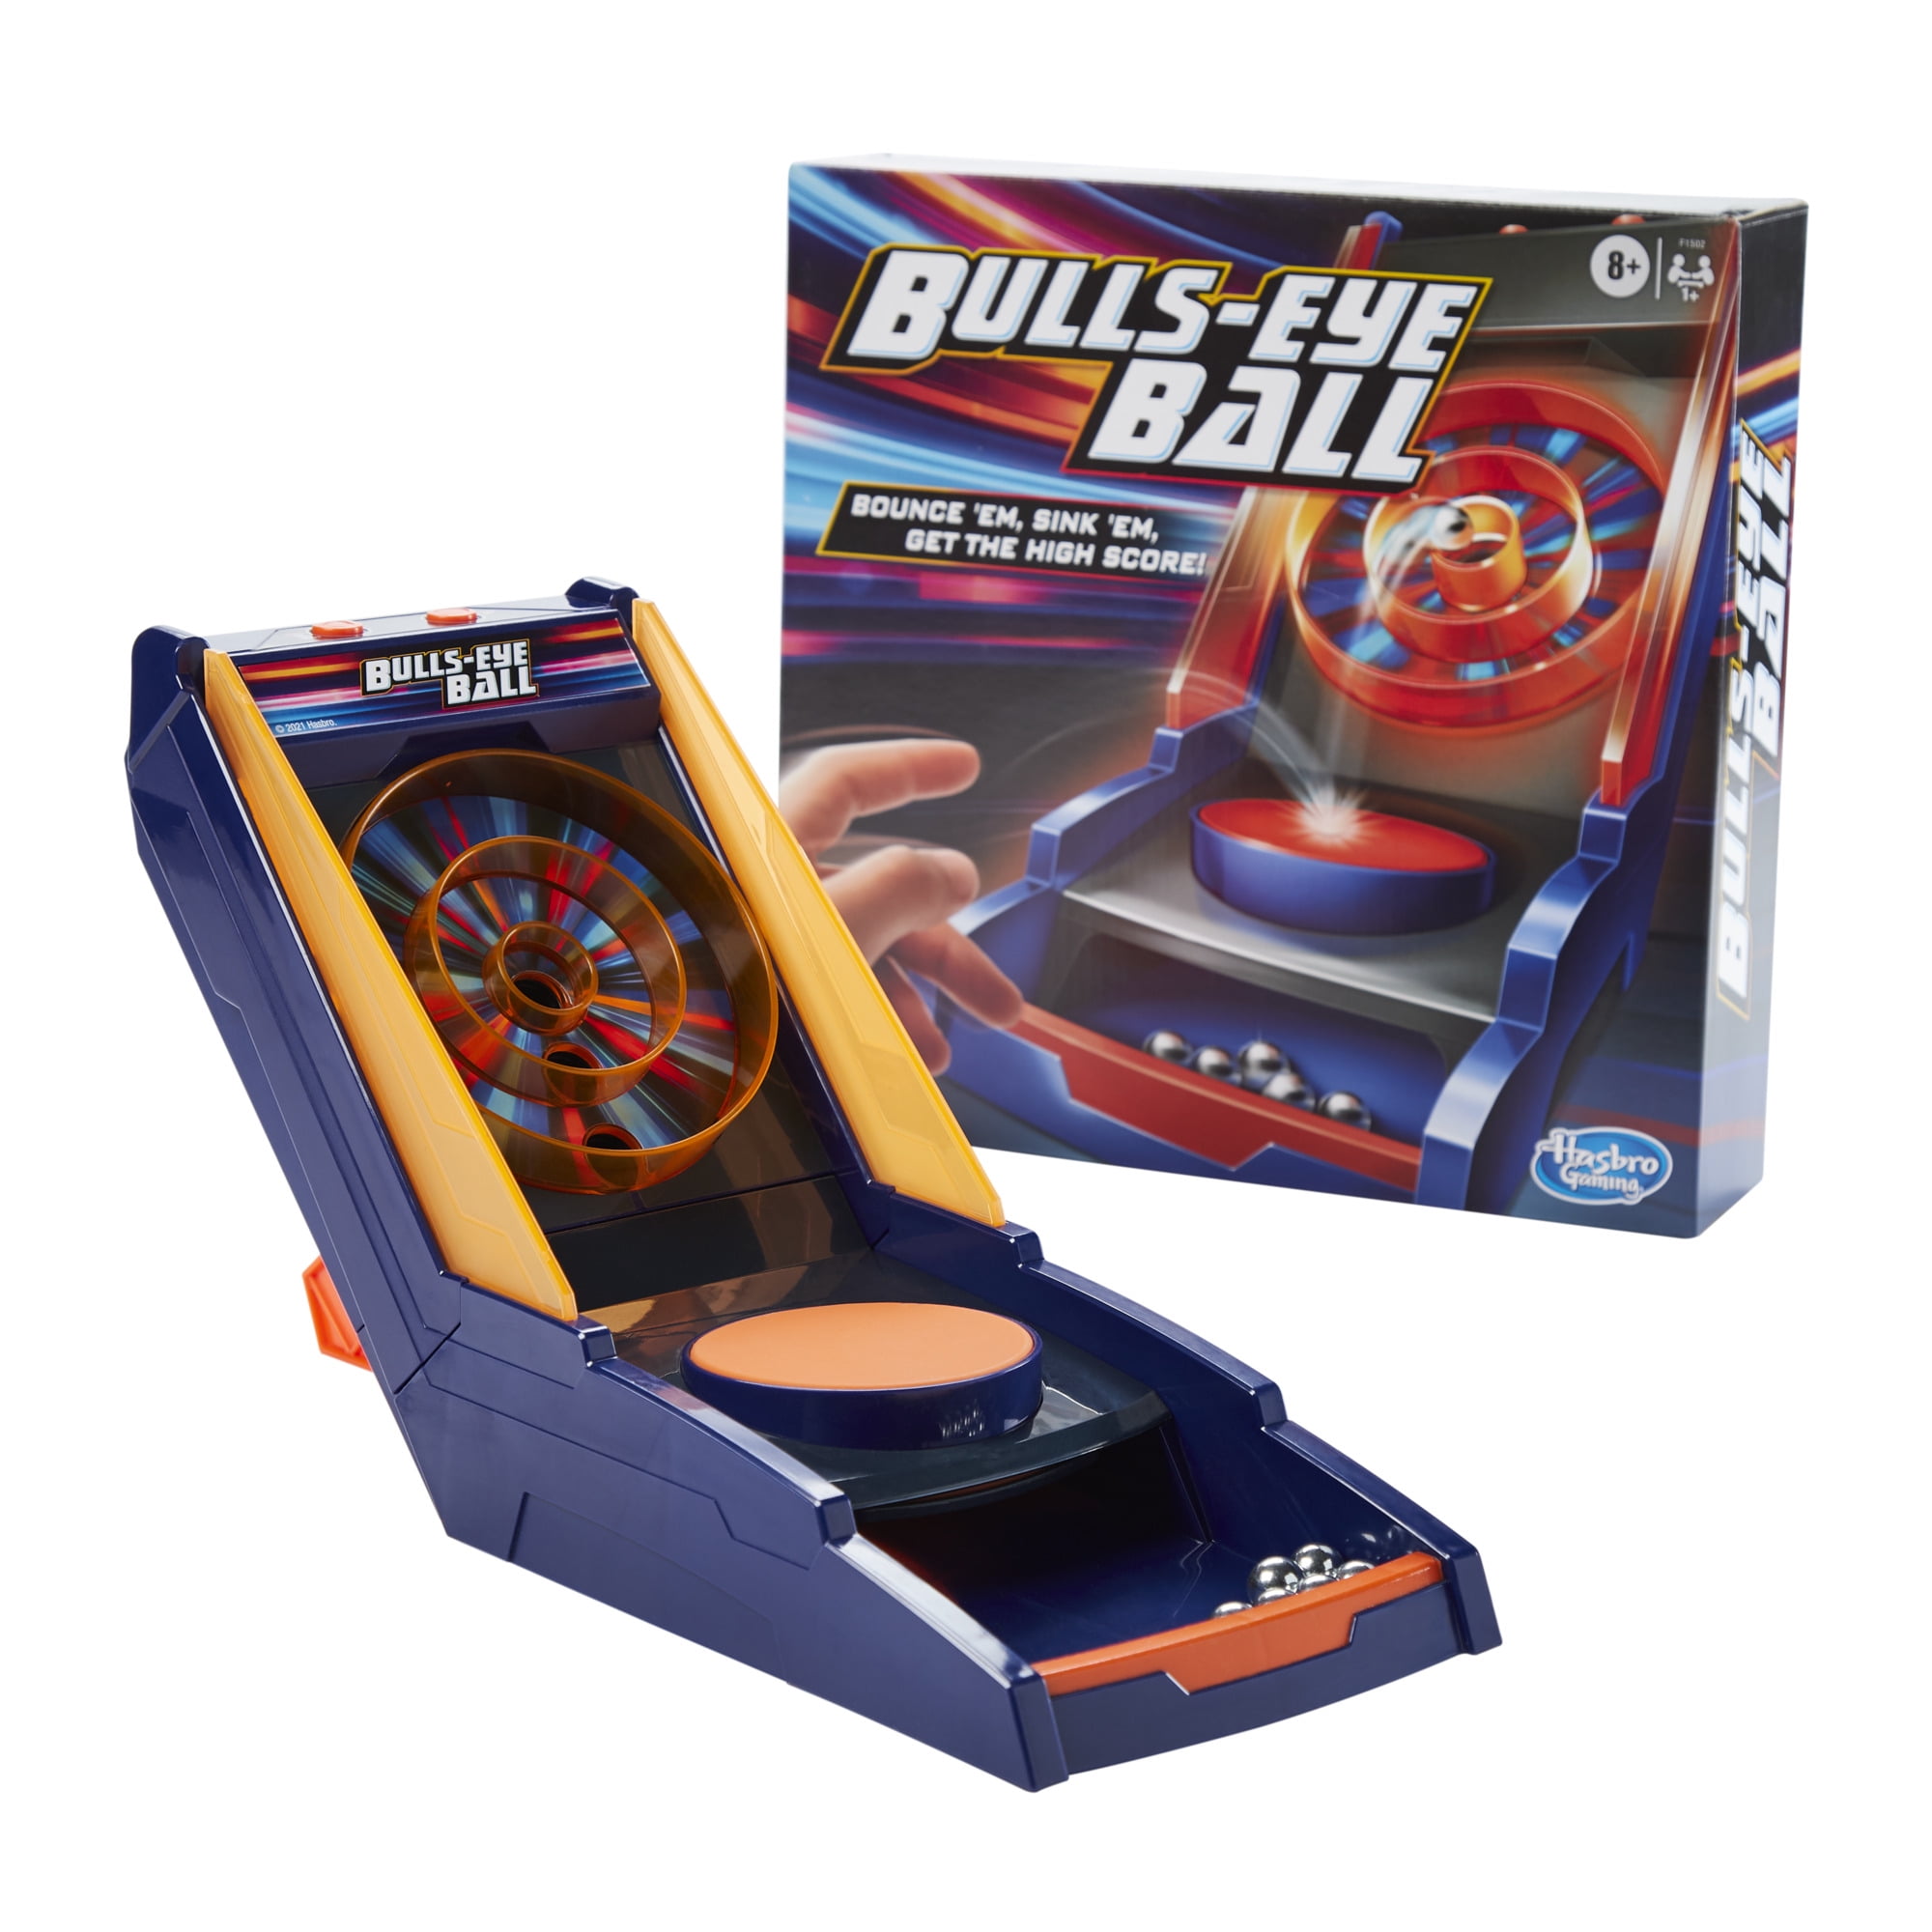 No Balls Details about   Tiger Games Bulls-Eye Ball Electronic Talking Skee-Ball Target Game 